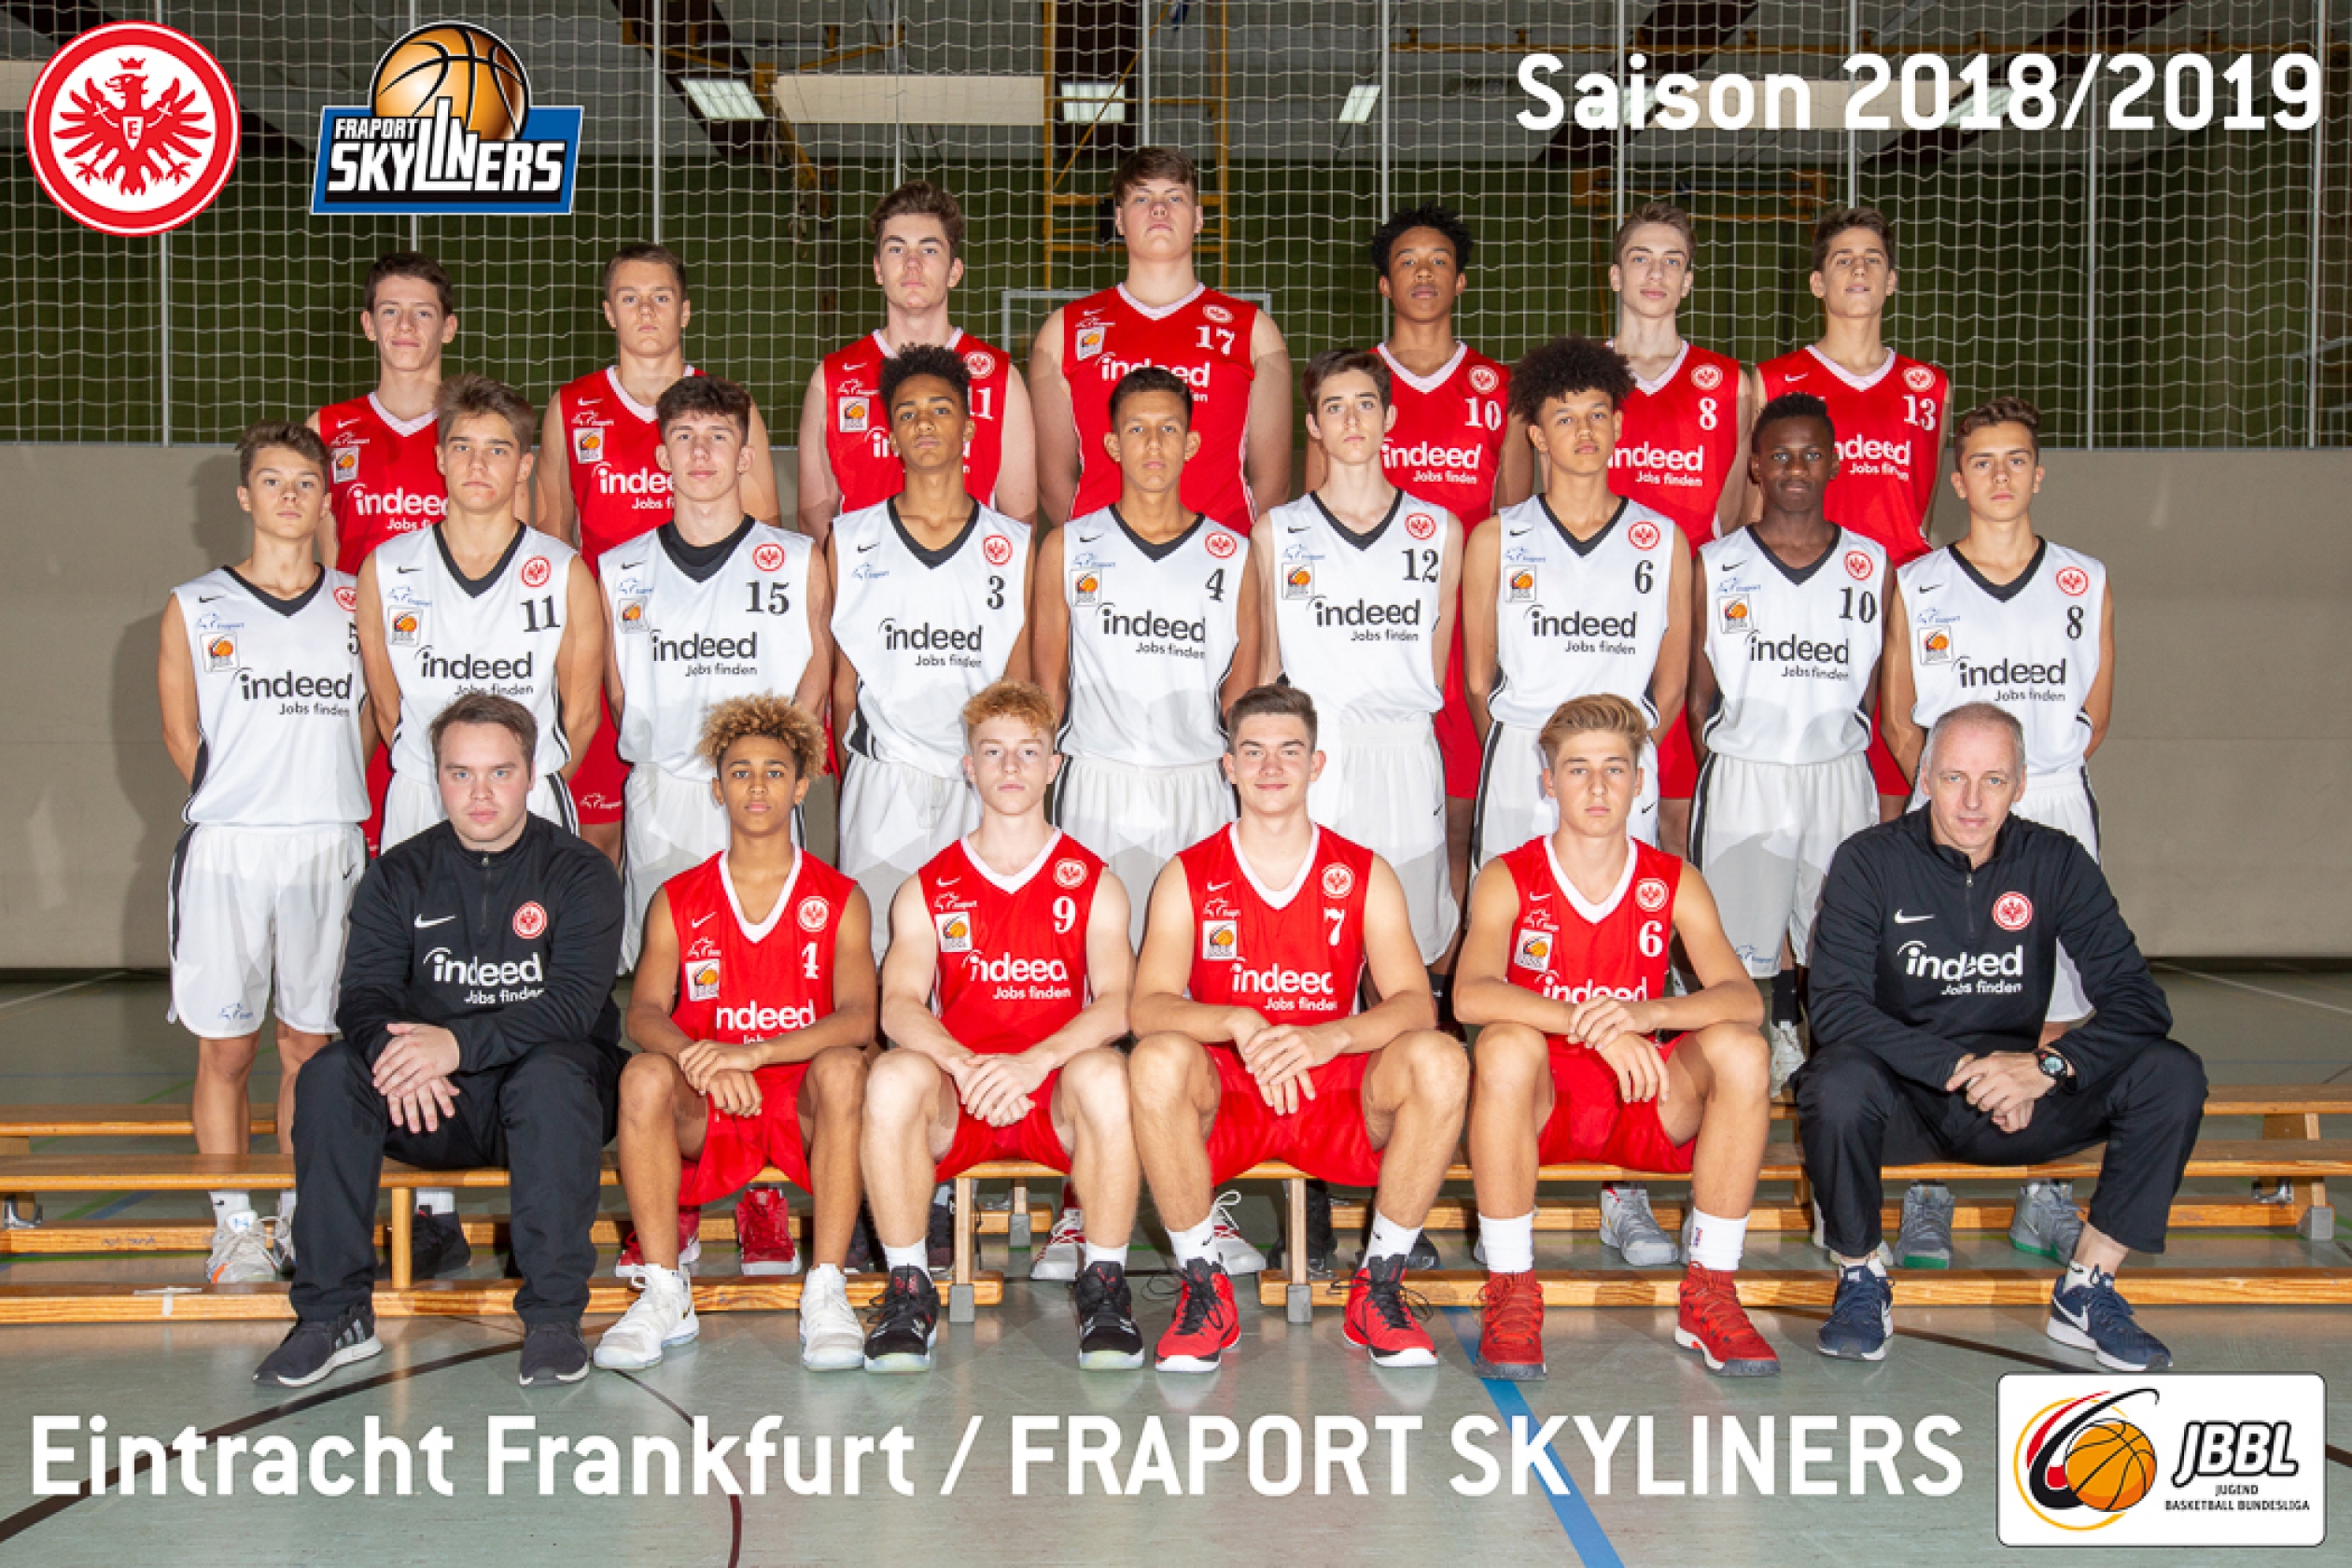 Mannschaftsfoto Eintracht Frankfurt / FRAPORT SKYLINERS